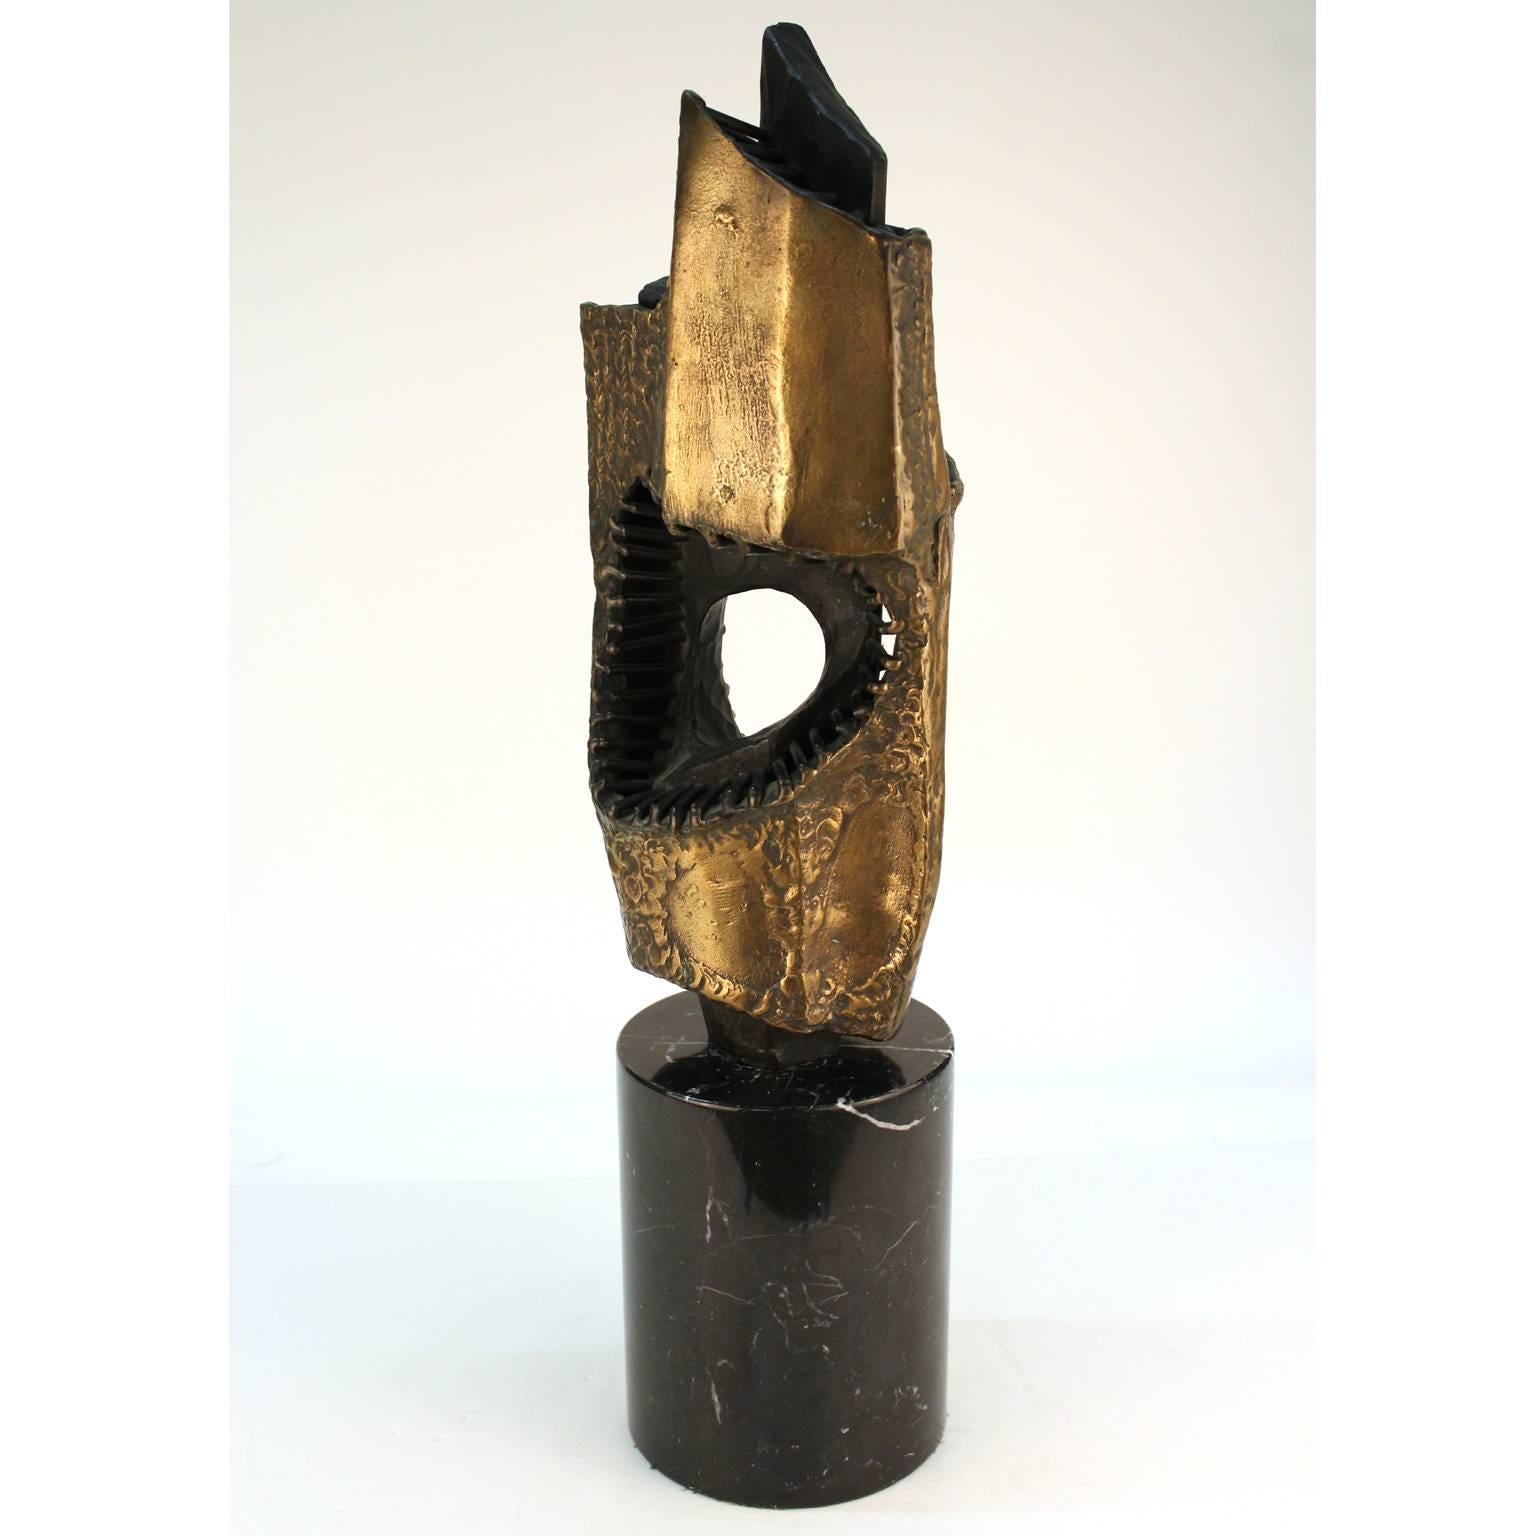 Brutalistische abstrakte Skulptur aus geschweißter Bronze mit teilweiser Goldpatina, geschaffen von Vandevoorde in den 1960er bis 1970er Jahren. Unterschrieben. Guter Gesamtzustand. Der originale Holzsockel trägt eine Plakette mit dem Titel 